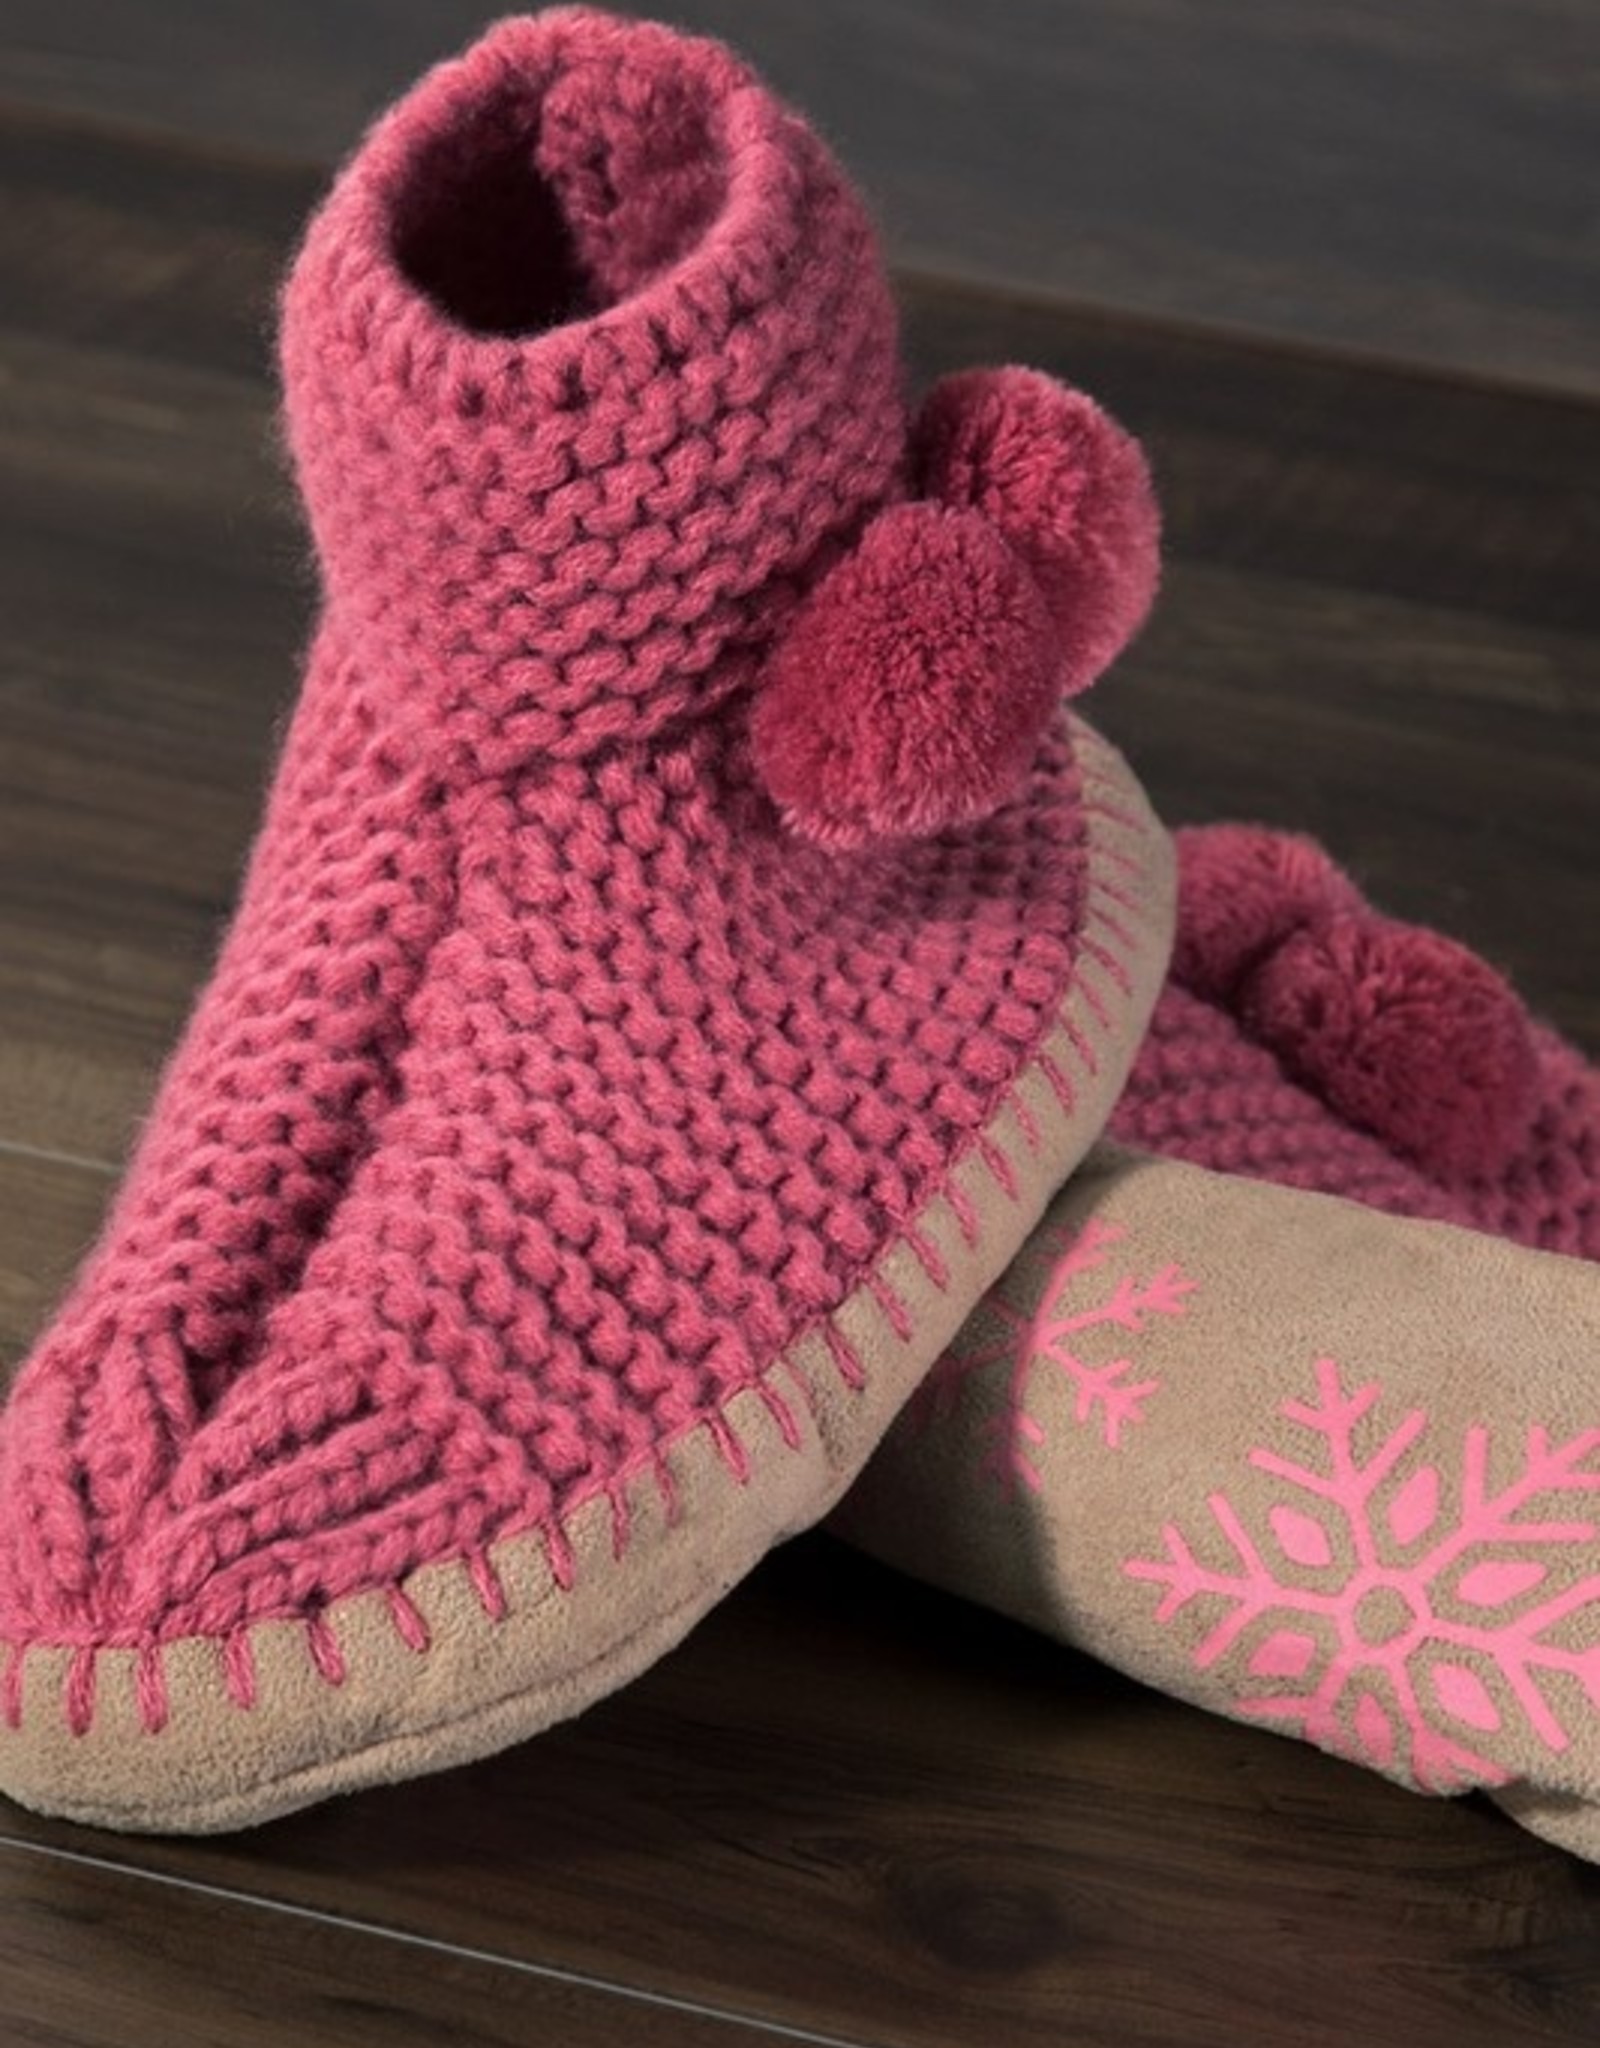 Slippers-Knitted W/Pom Pom